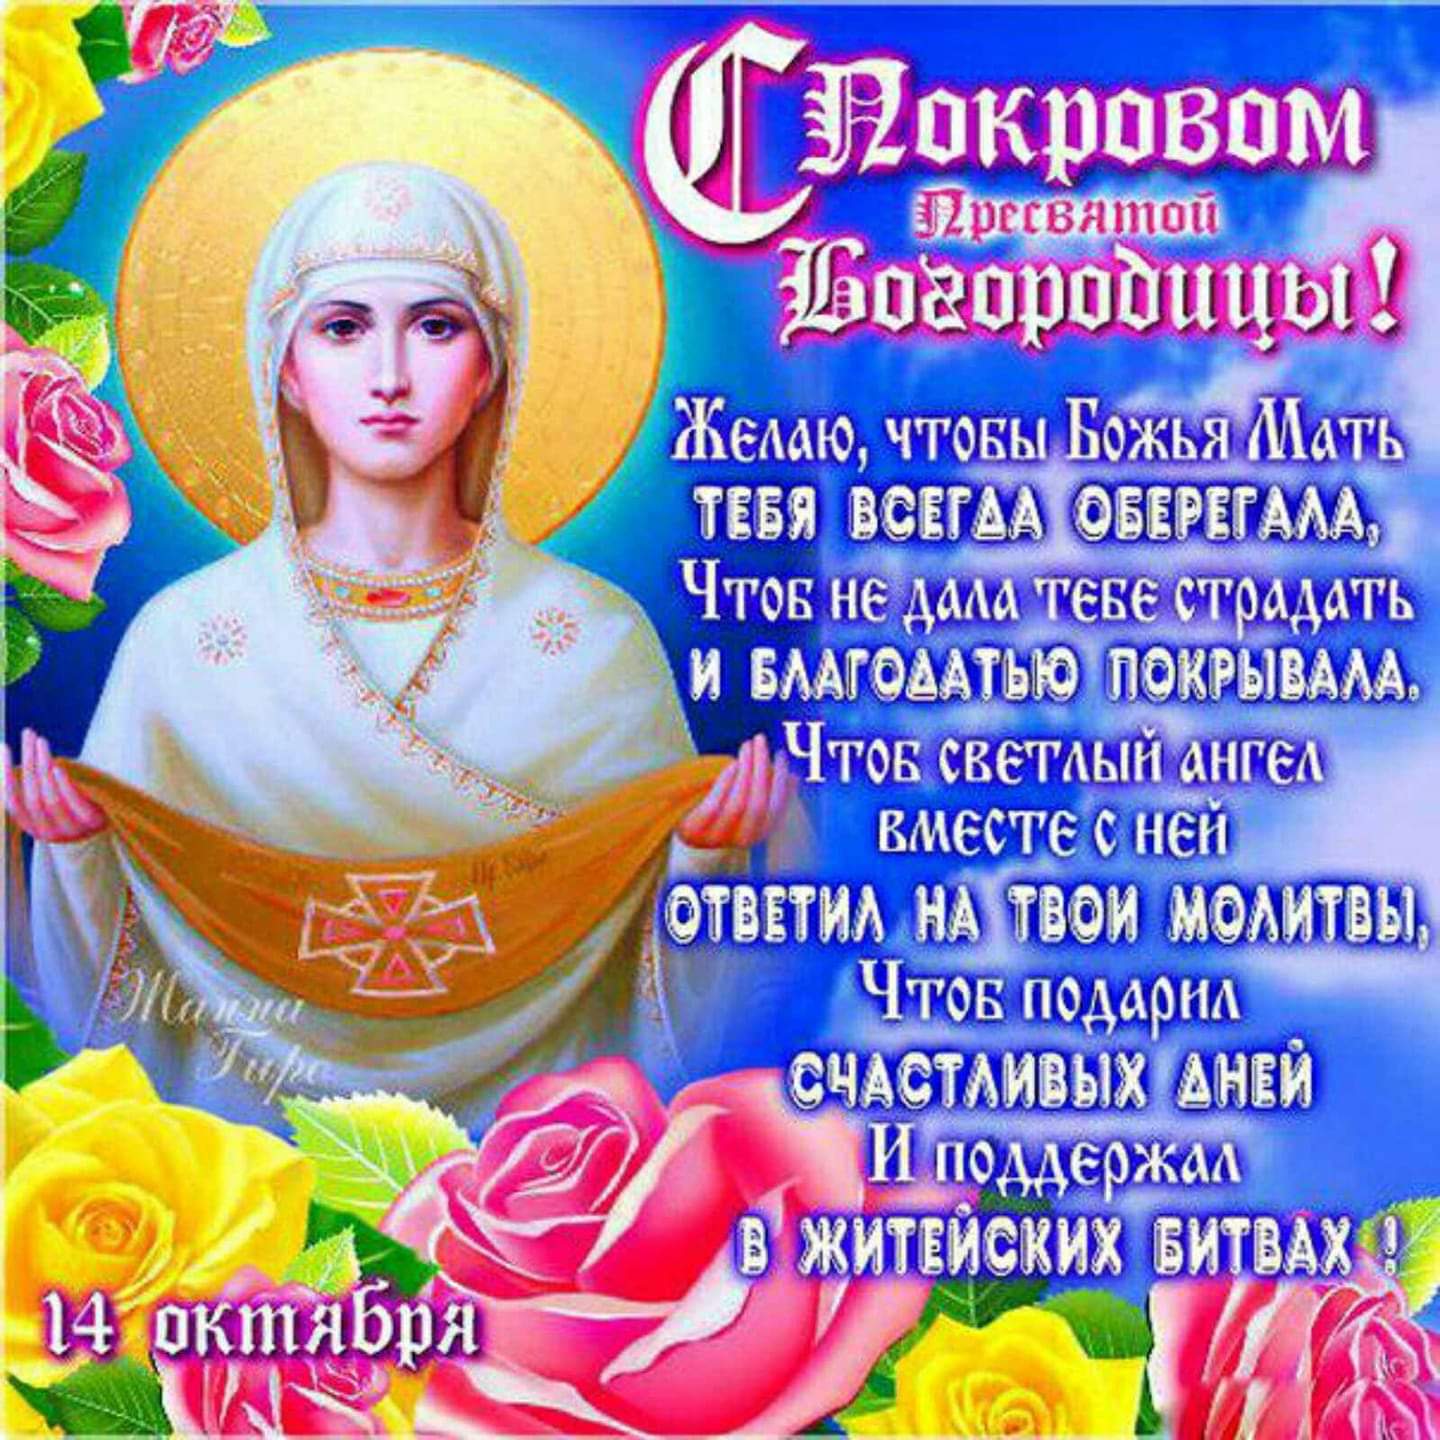 Праздник Сегодня В России Поздравление